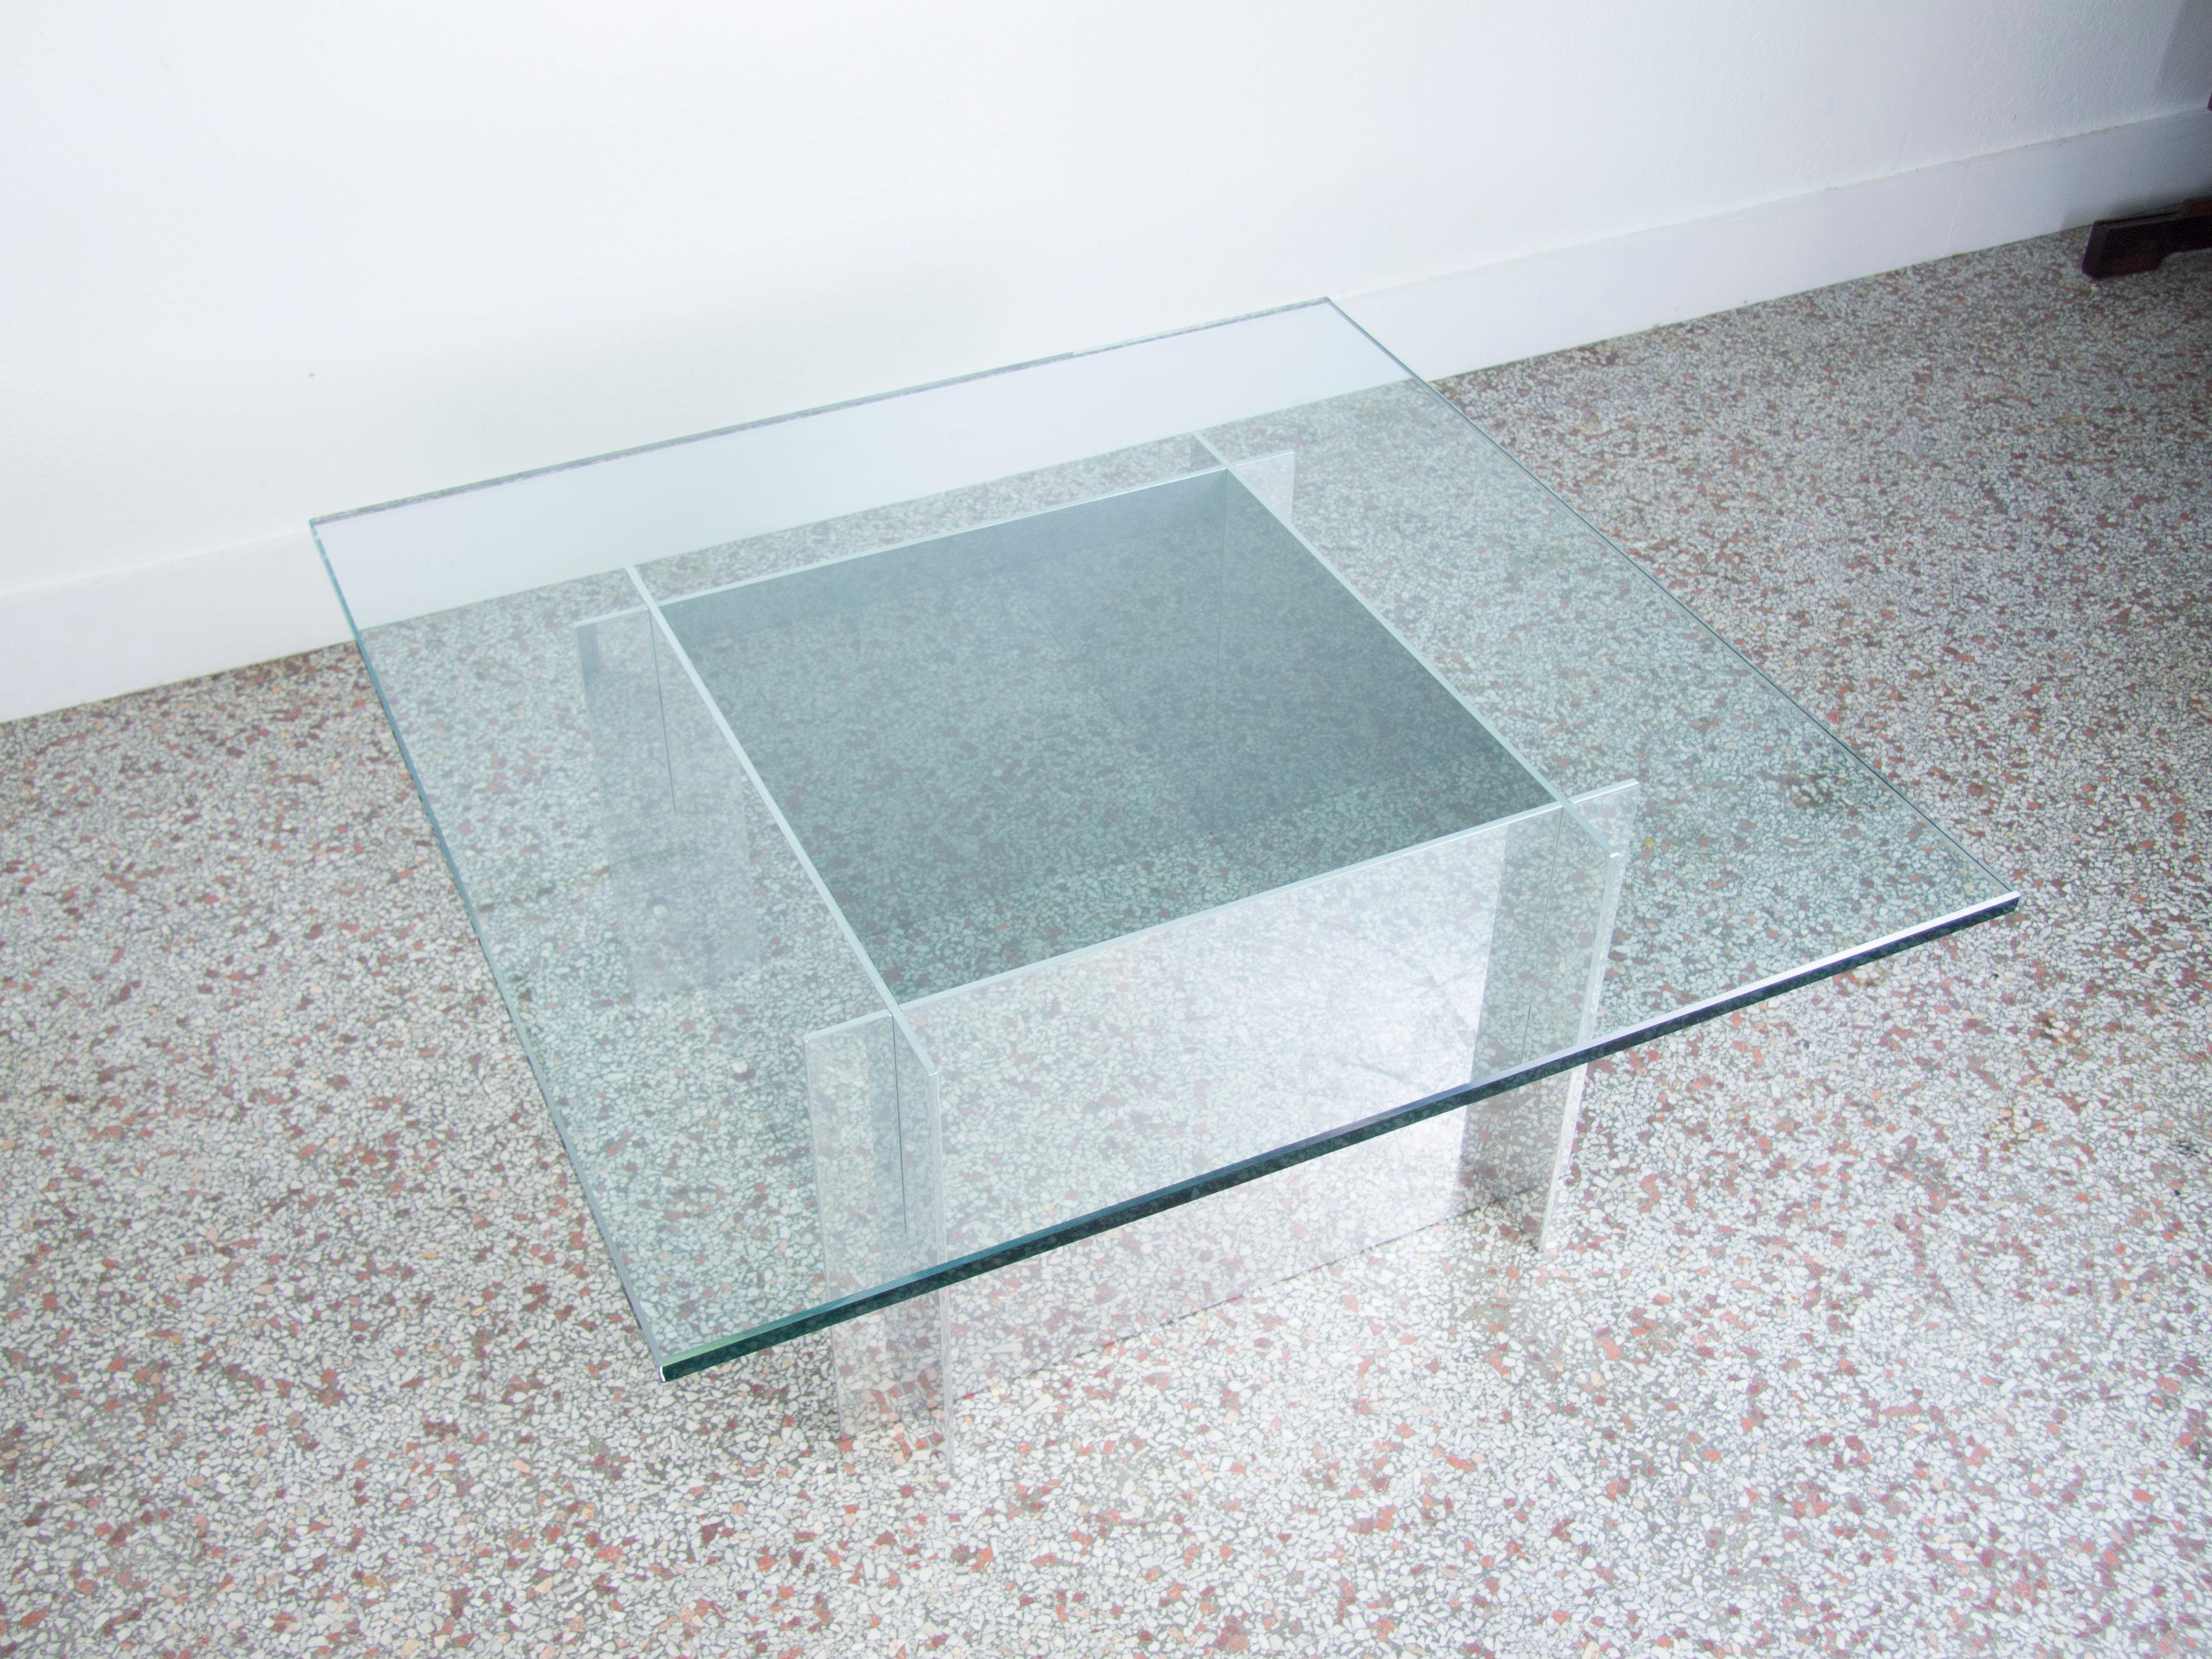 Table basse vintage en aluminium conçue par Paul Mayn pour Habitat. La base de la table est composée de quatre plaques d'aluminium qui se verrouillent les unes dans les autres de manière « couchée » et sont ornées d'un plateau en verre carré de 3/4